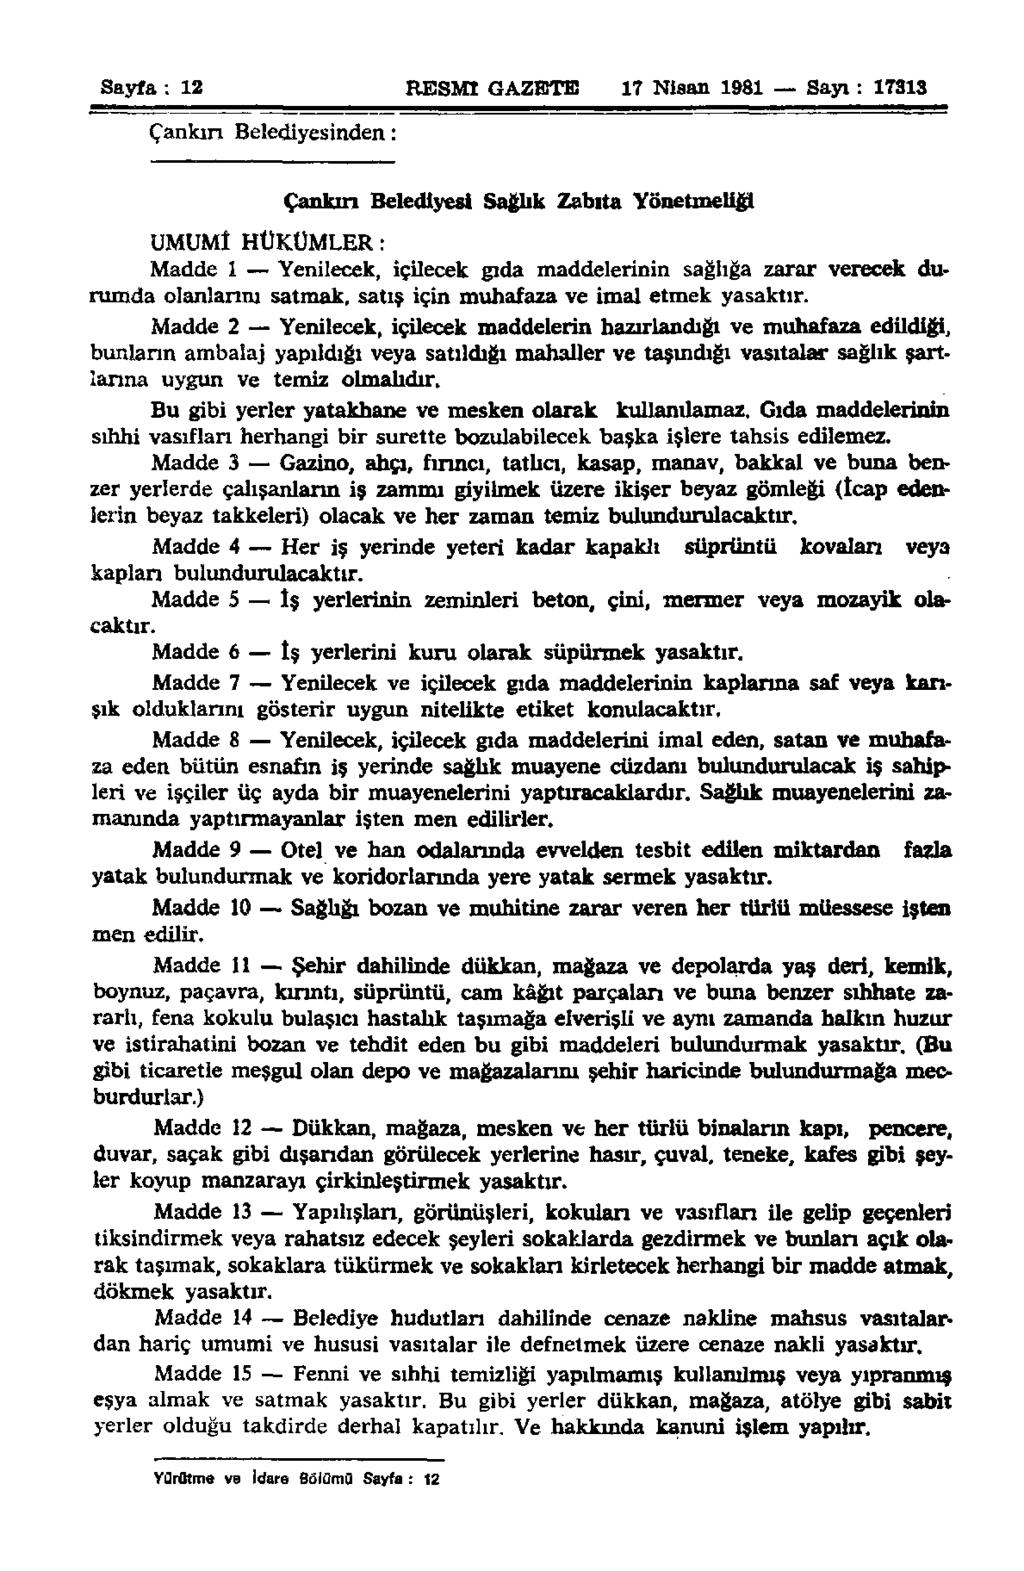 Sayfa : 12 RESMİ GAZETE 17 Nisan 1981 Sayı: 17313 Çankırı Belediyesinden: UMUMİ HÜKÜMLER: Çankırı Belediyesi Sağlık Zabıta Yönetmeliği Madde i Yenilecek, içilecek gıda maddelerinin sağlığa zarar